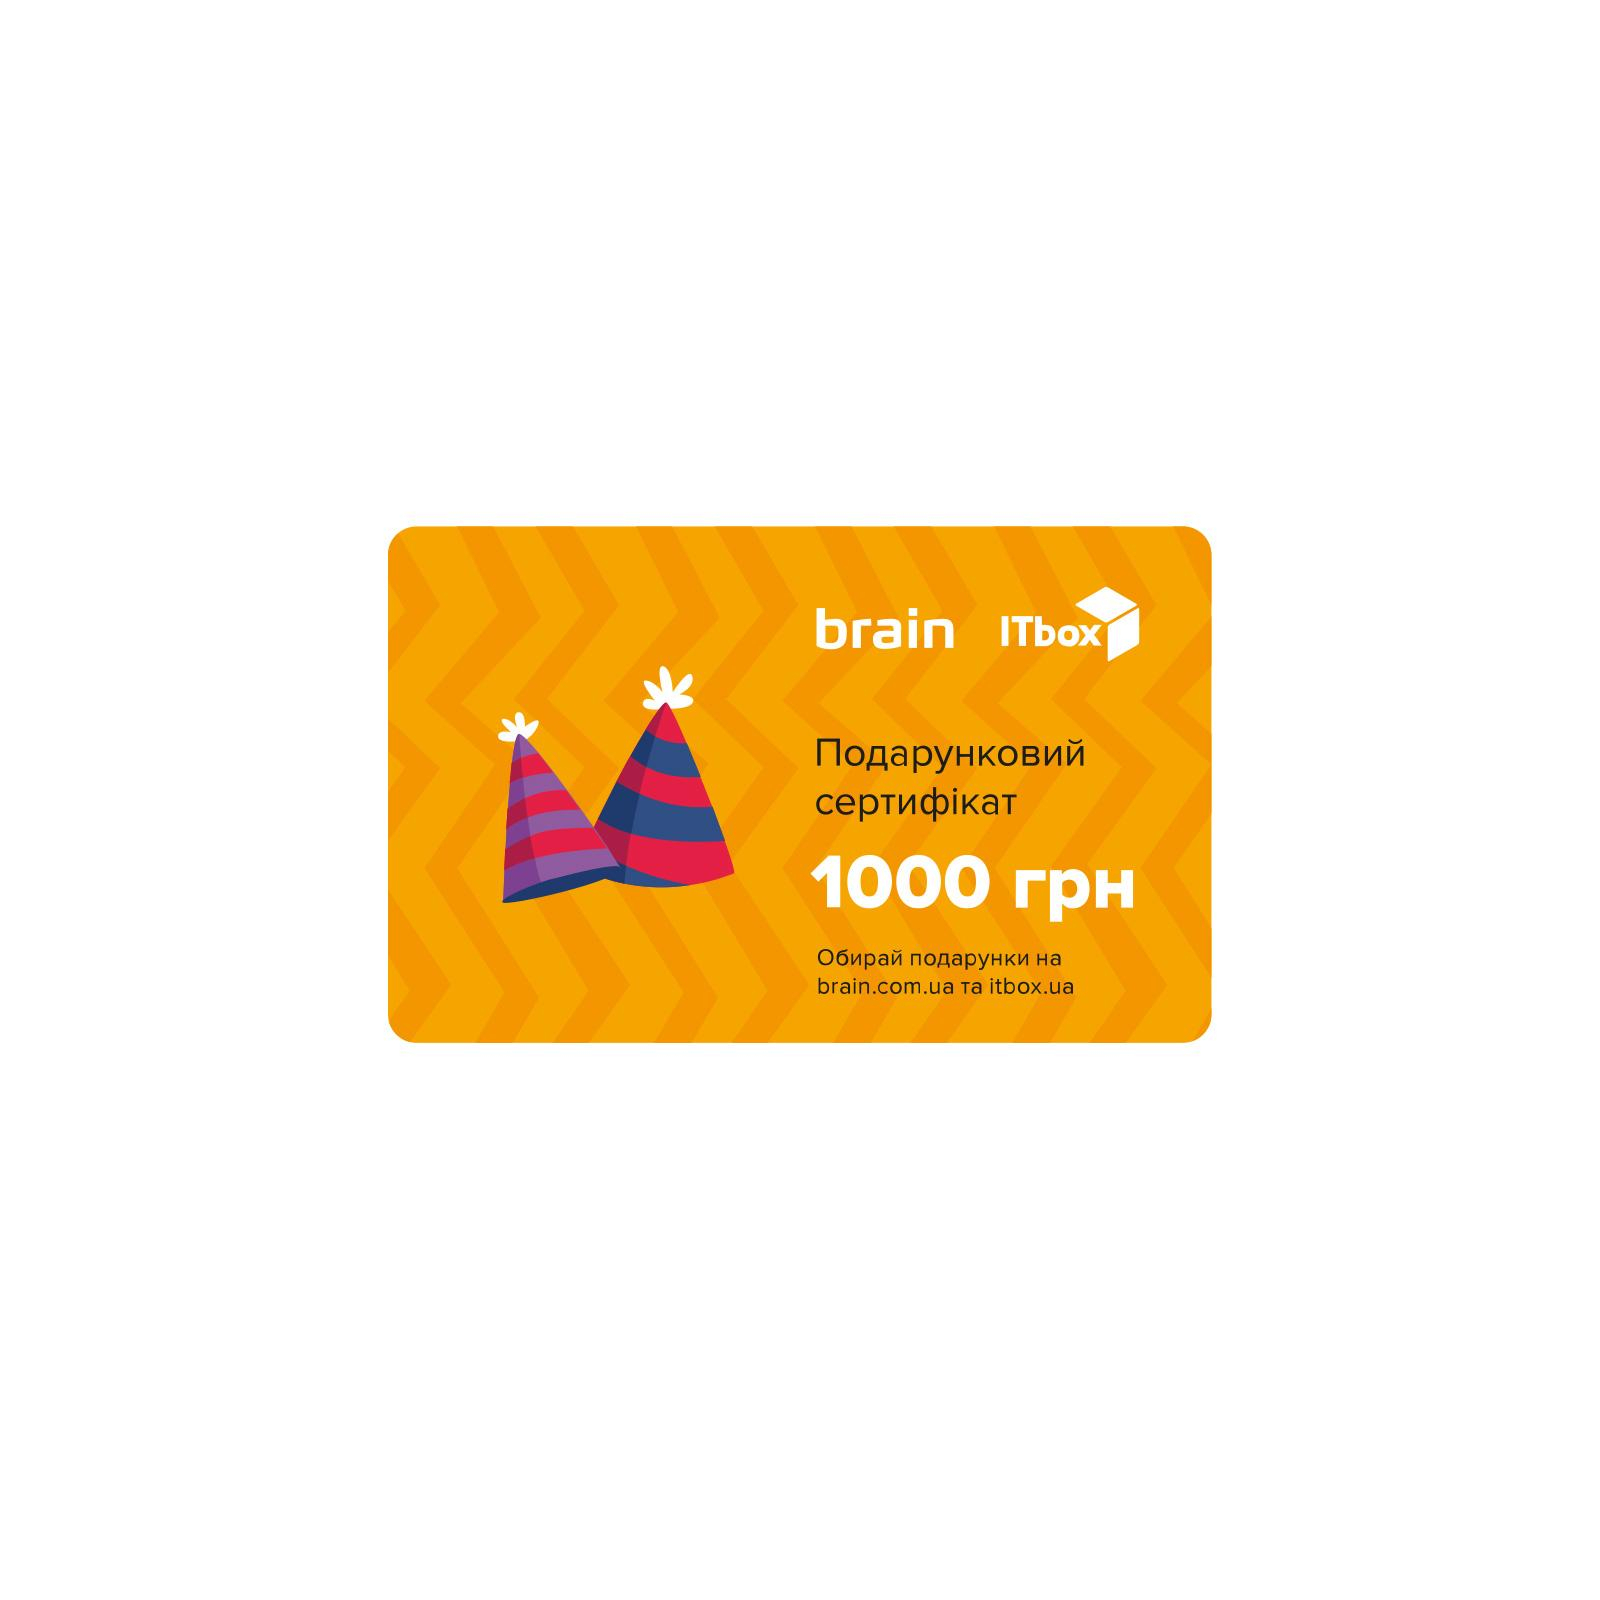 Подарунковий сертифікат на 1000 грн Brain/ITbox